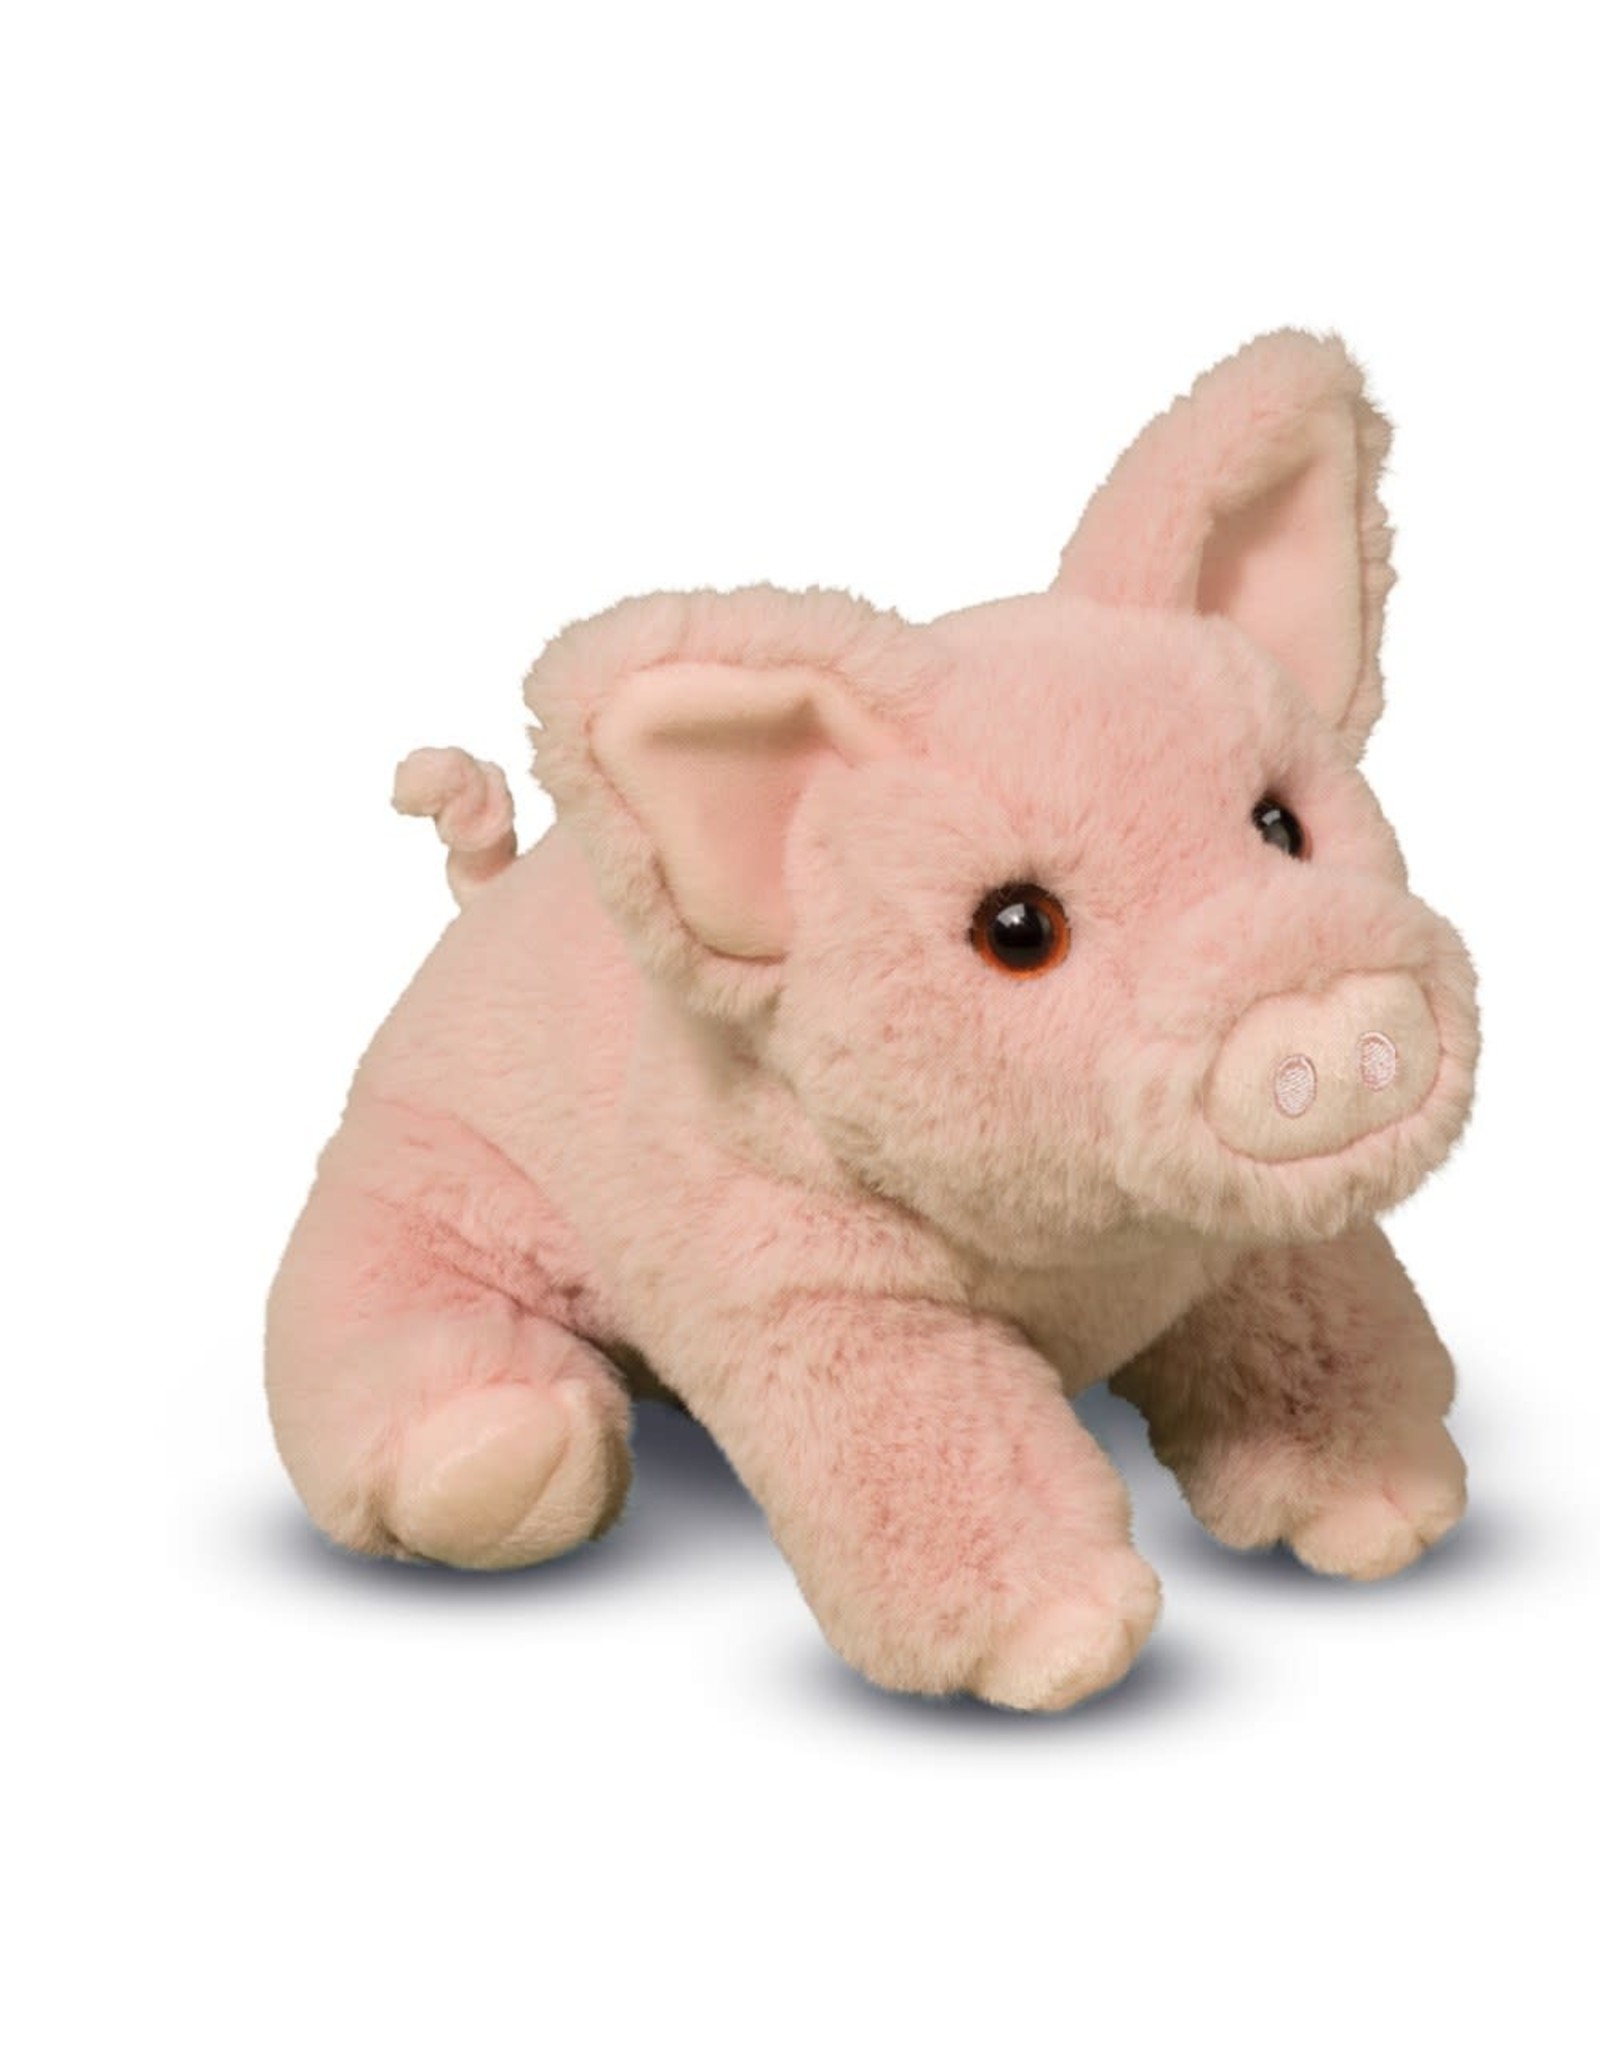 Douglas Pinkie Soft Pig